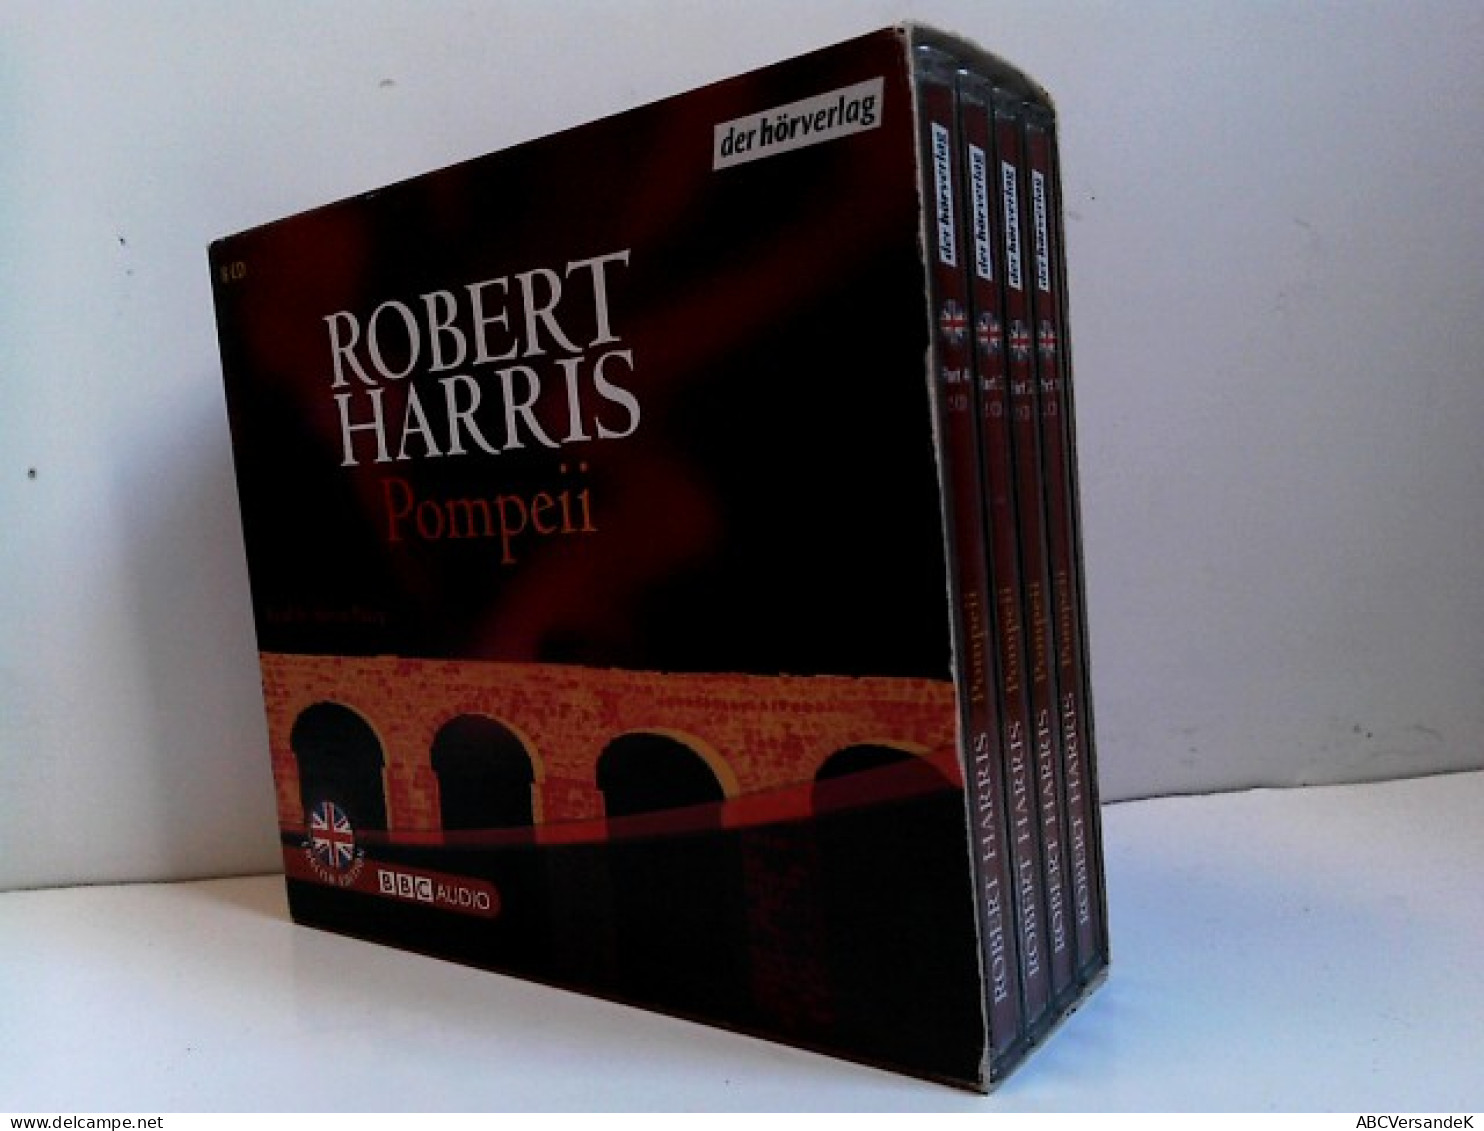 Pompeii: Vollständige Lesung. Level: Intermediate (BBC) - CDs